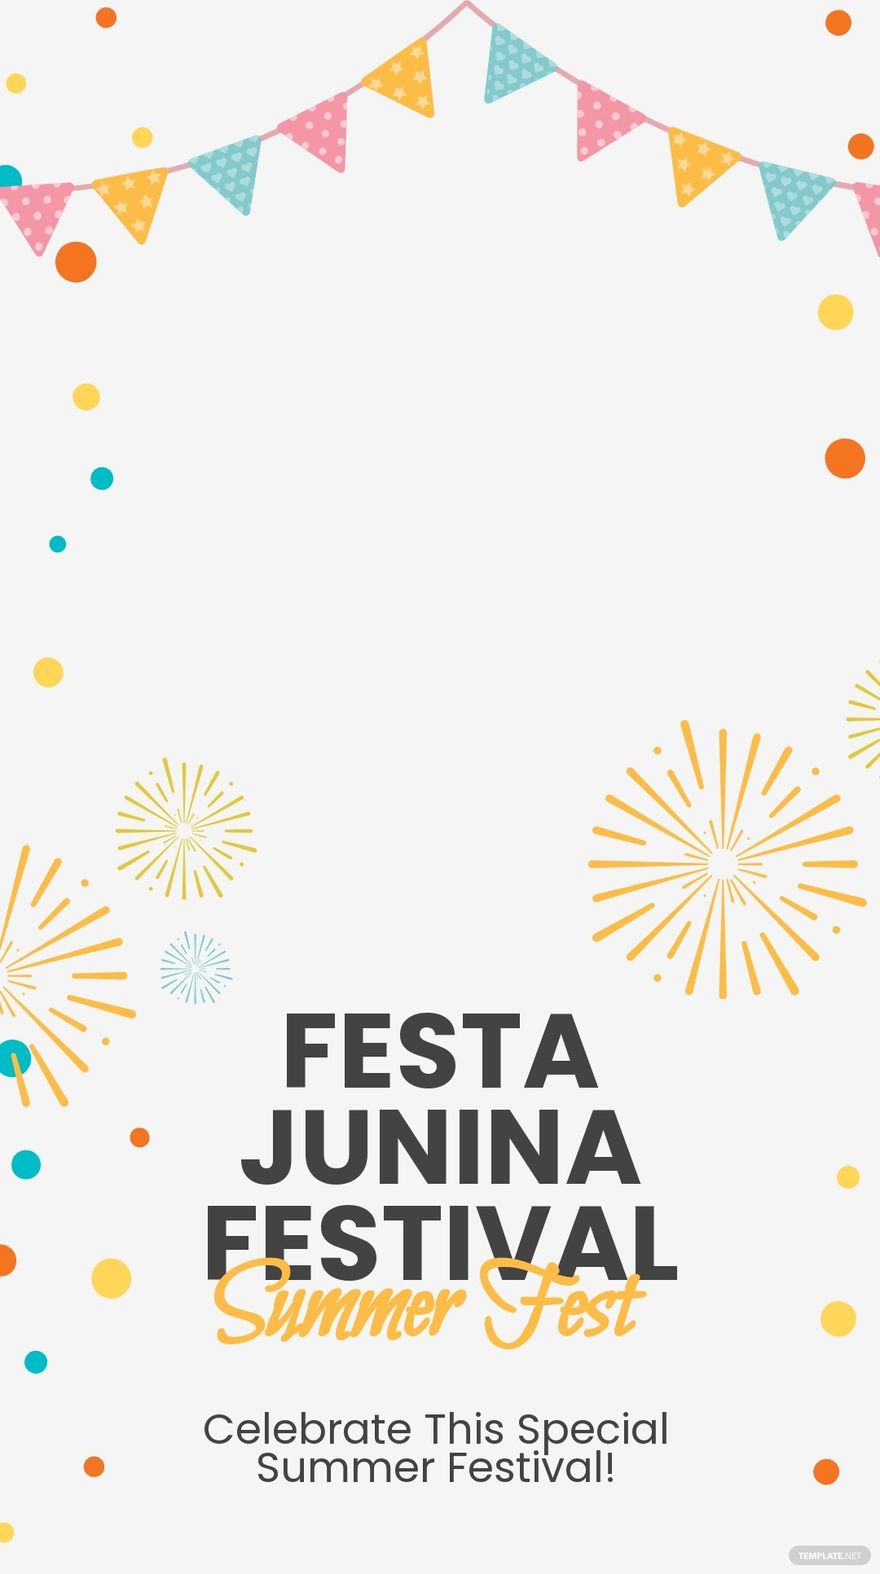 Free Festa Junina Festival Snapchat Geofilter Template